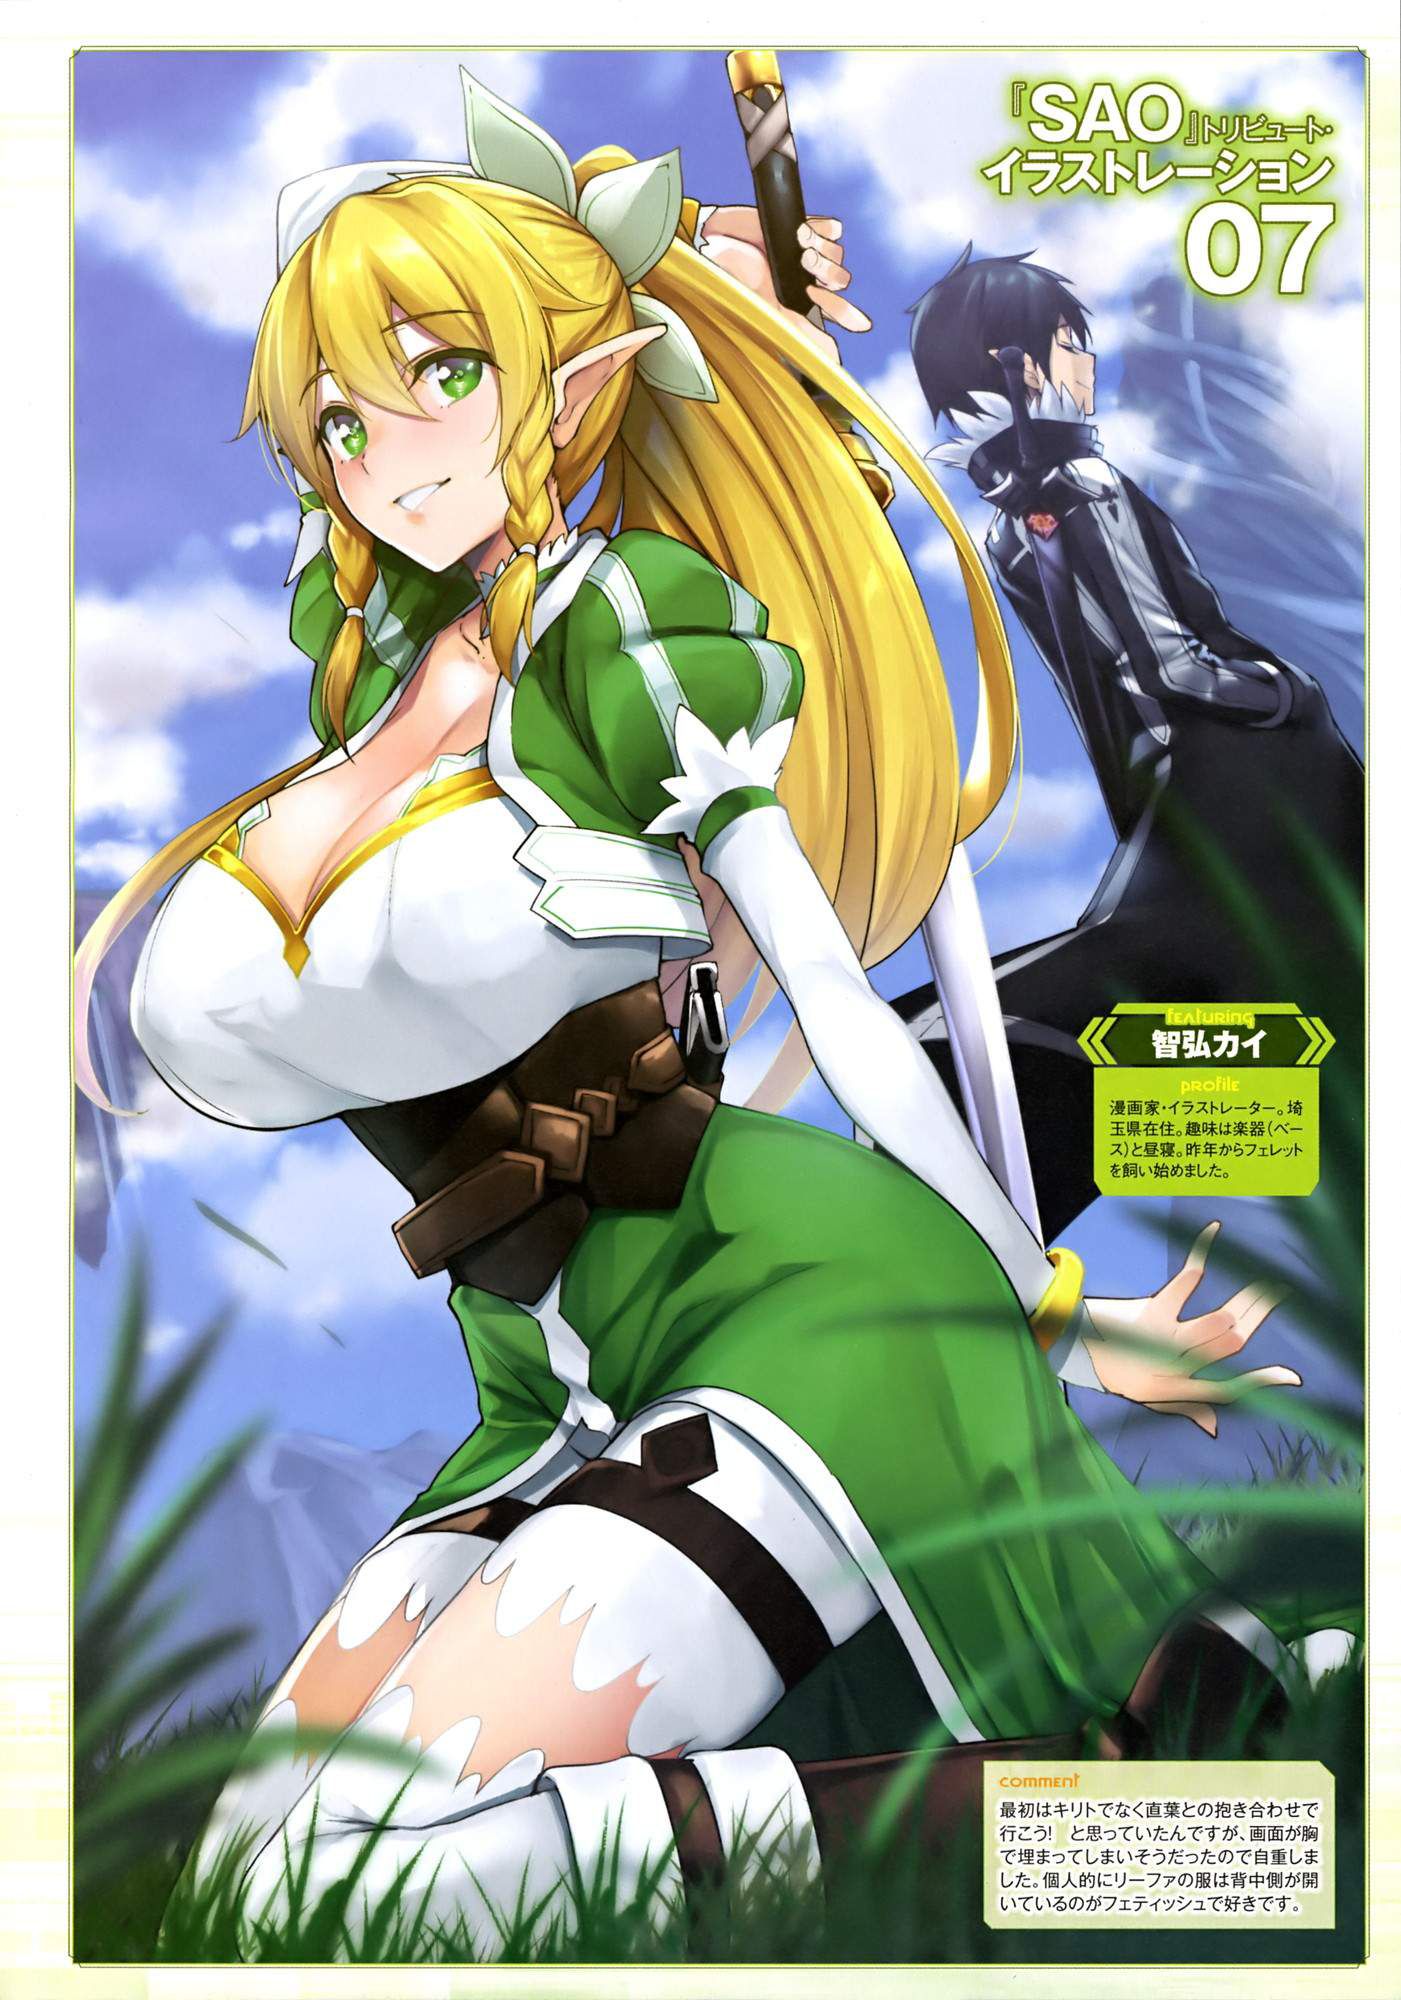 [Sword Art Online] (Kirigaya suguha) Erotic &amp; Moe Image ⑧ [SAO] 3